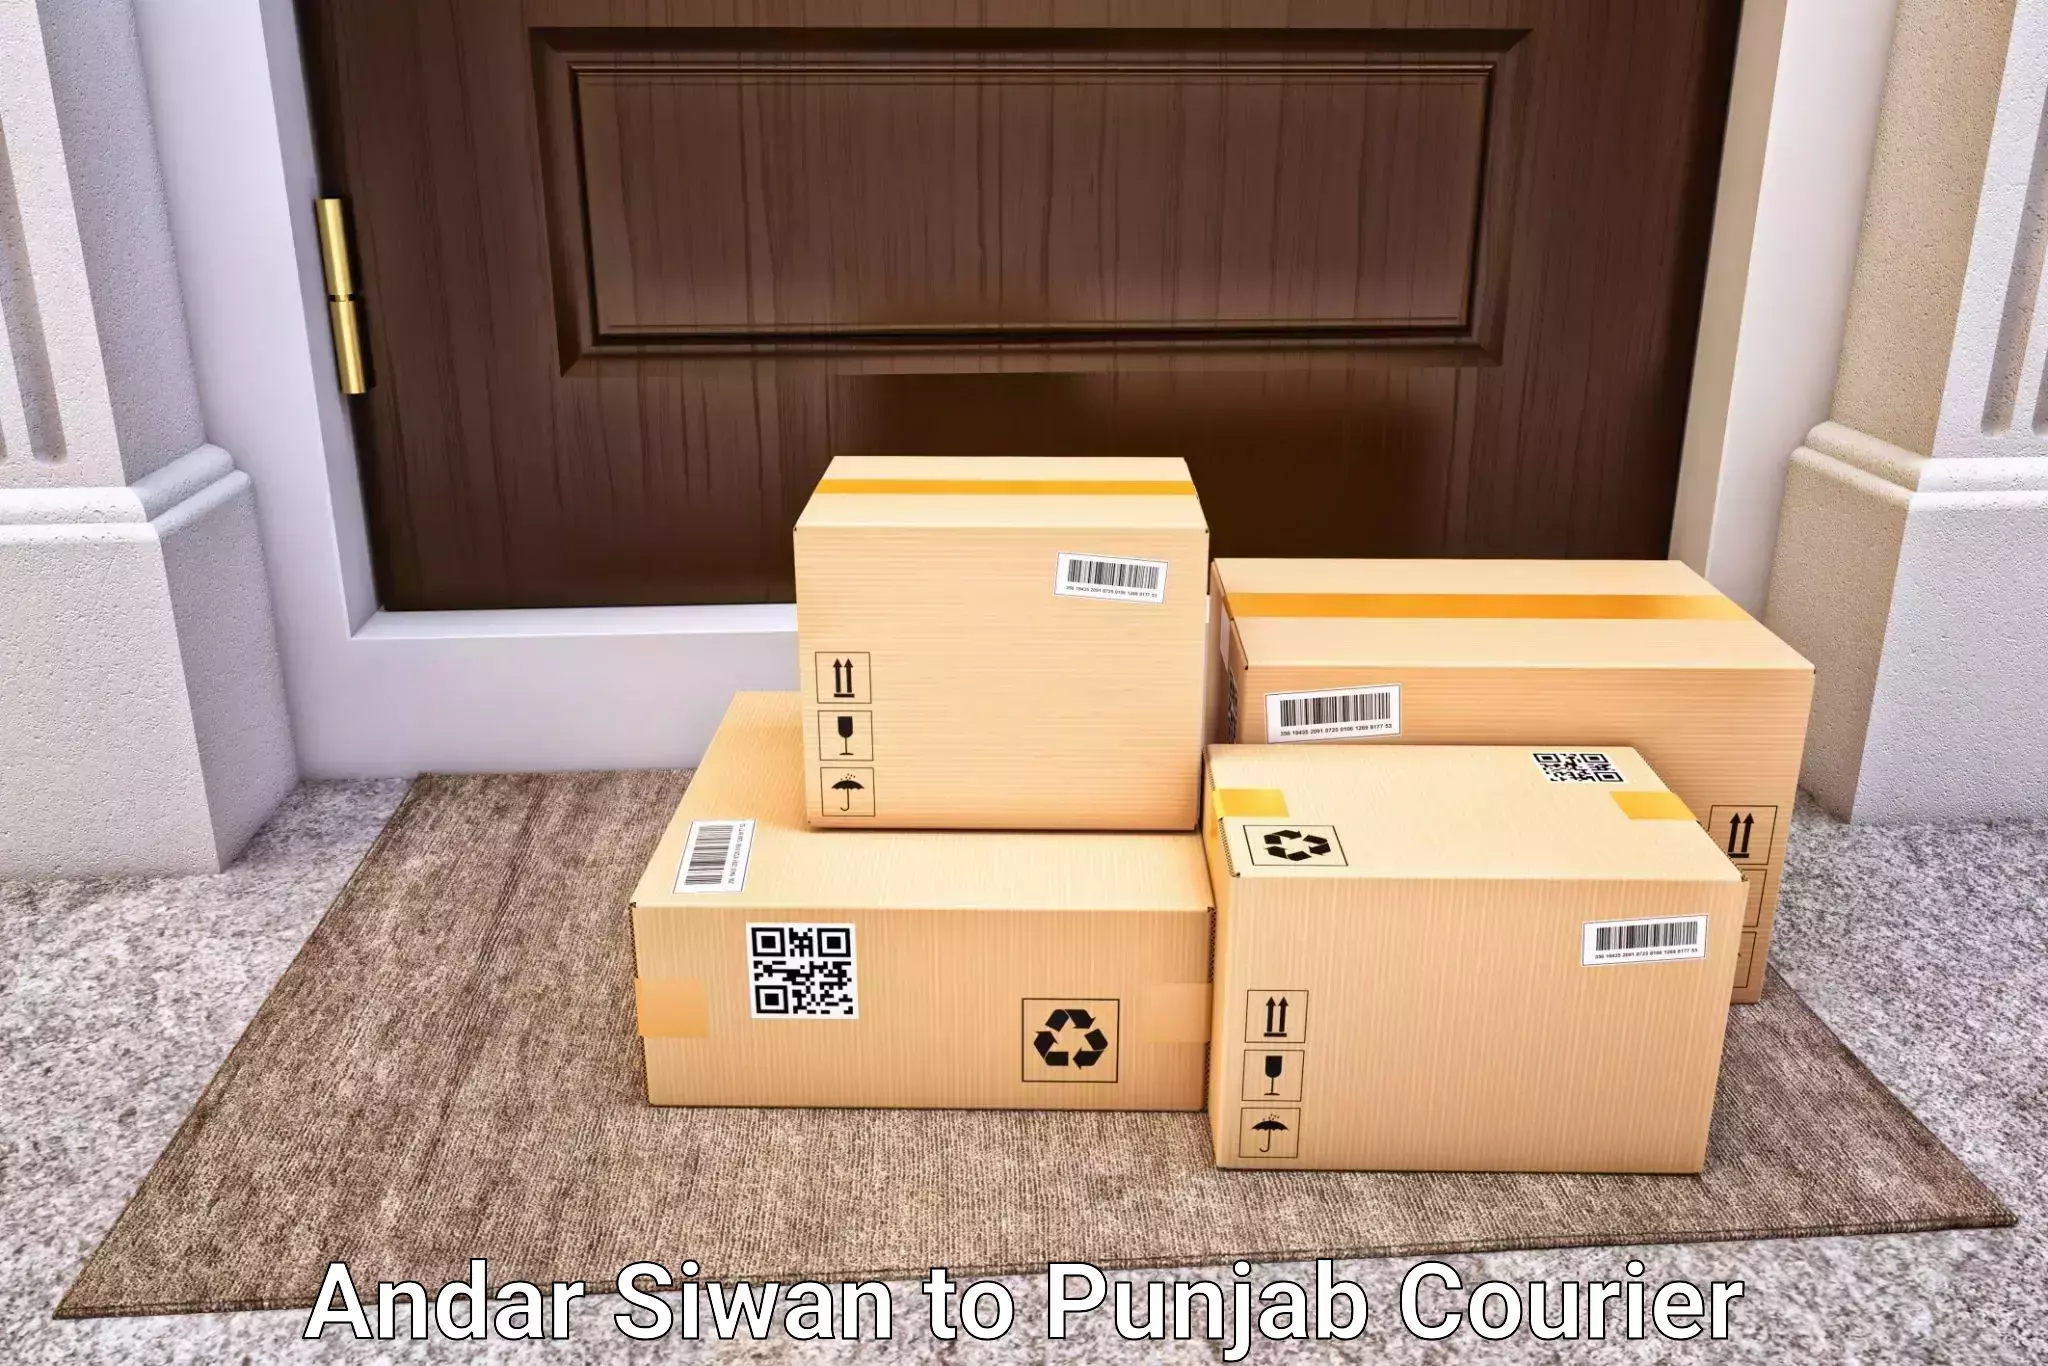 Luggage delivery estimate Andar Siwan to Patti Tarn Tara